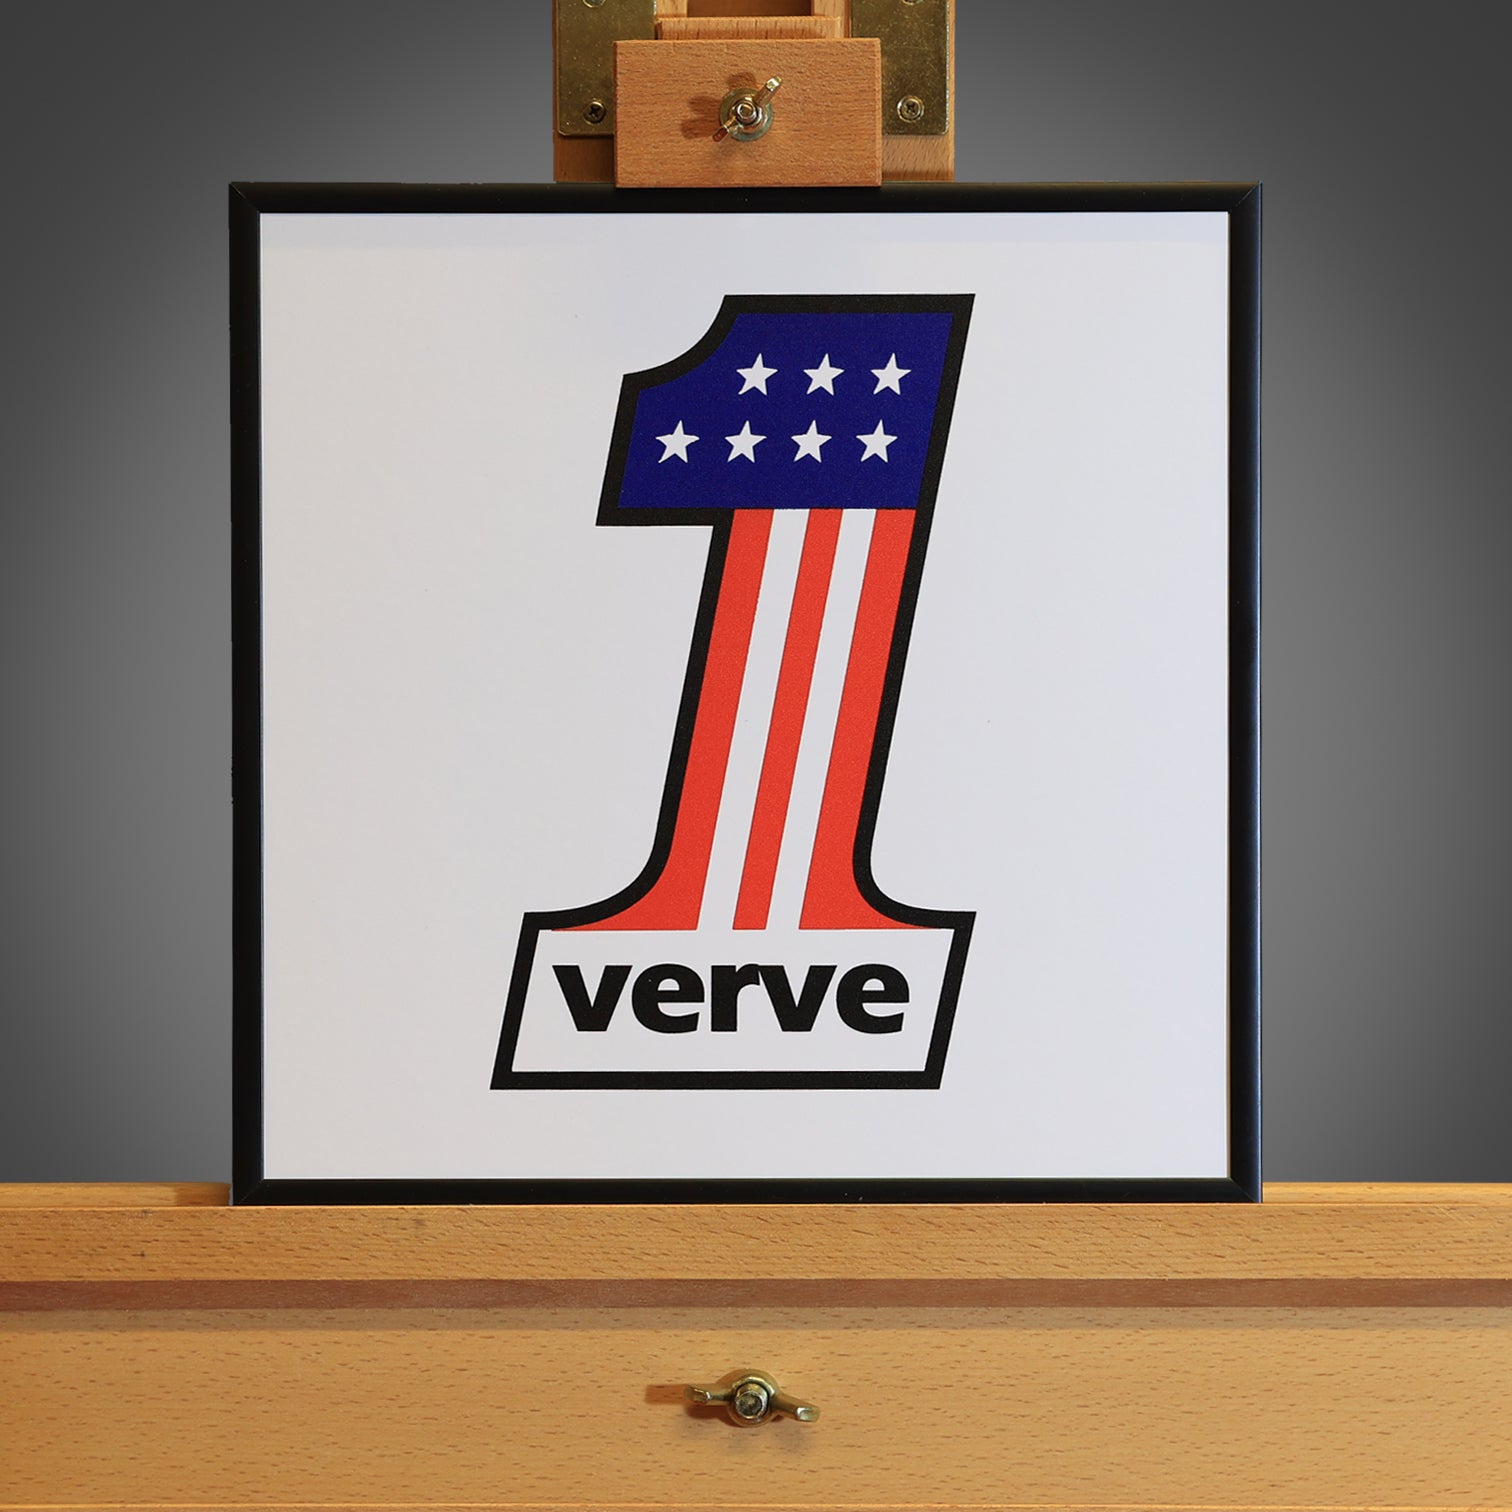 The Verve - Number 1 Framed Print